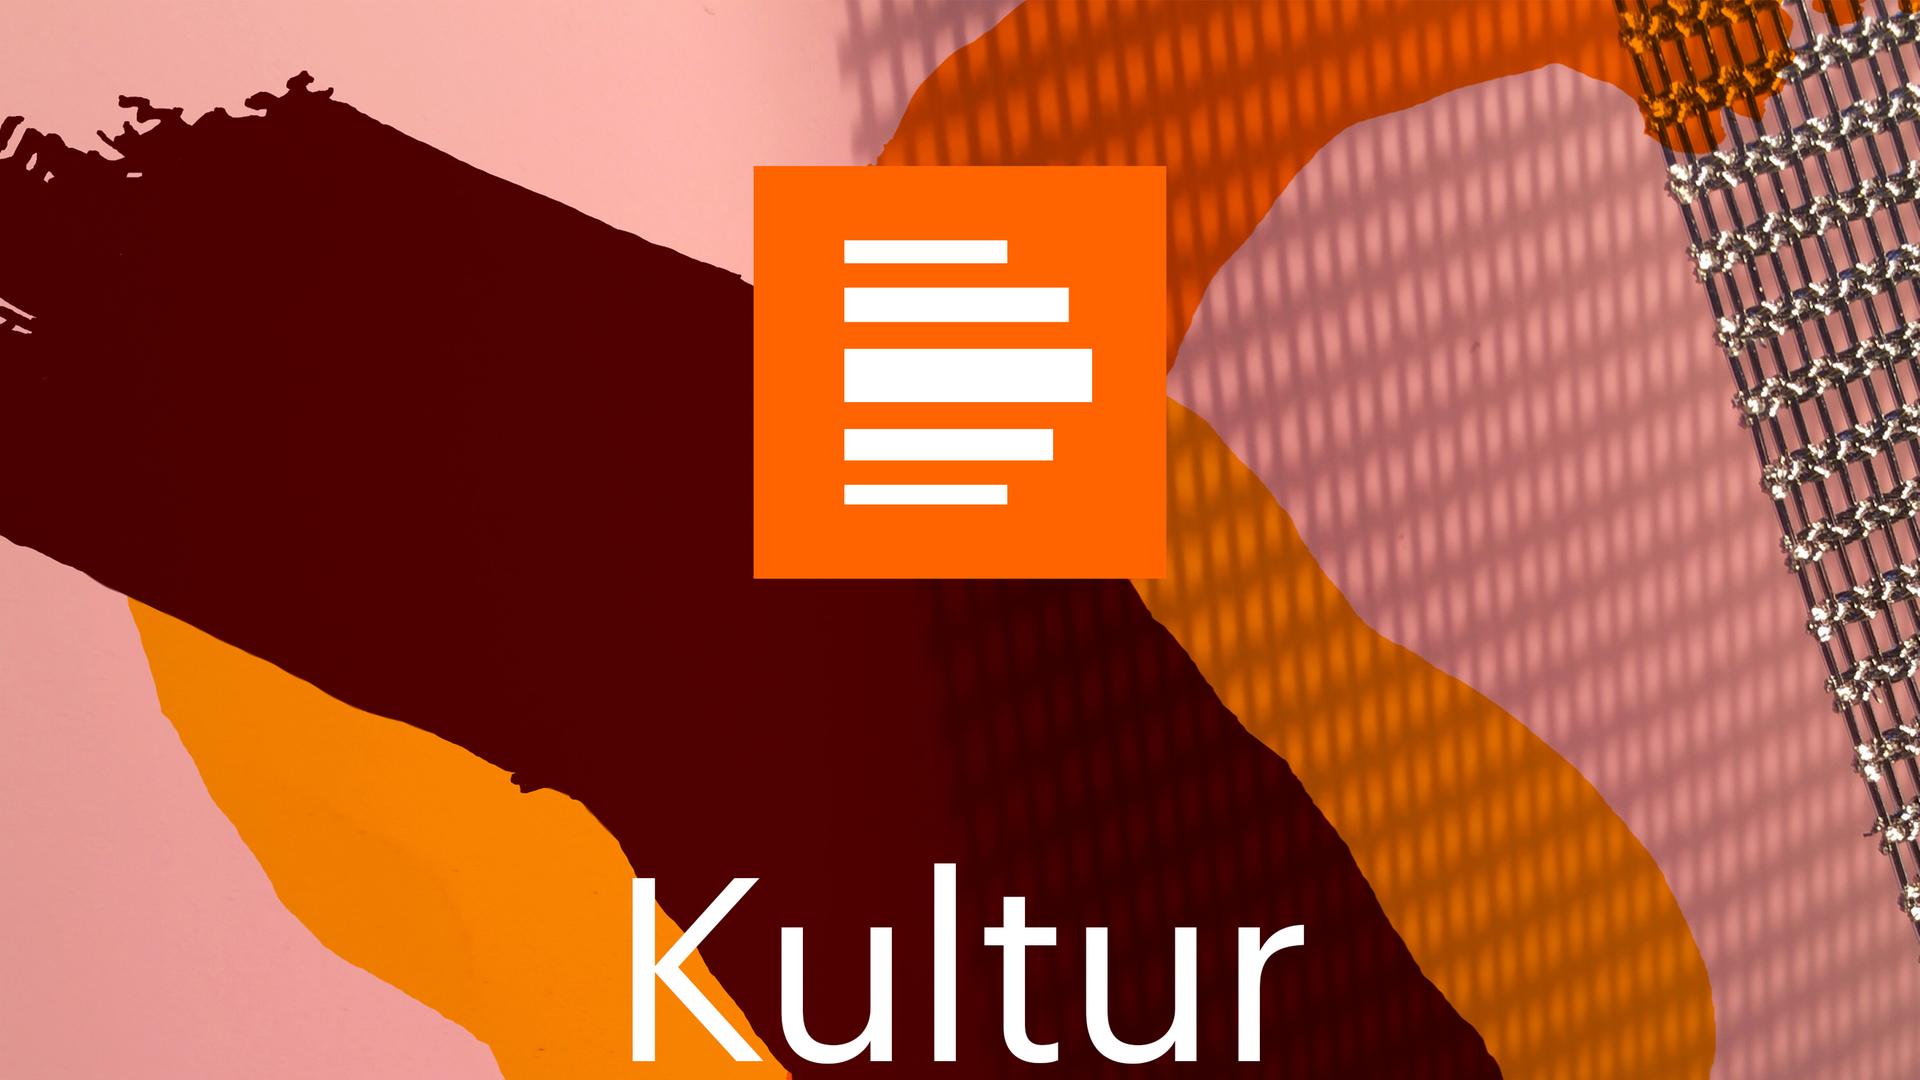 Das Bild zeigt das Podcast-Logo der "Kulturnachrichten". Es zeigt einen rosafarben Hintergrund, auf dem eine metallene Gitterstruktur samt Schlagschatten zu sehen ist. Darüber sind mehrere abstrakte, halbtransparente Flächen in Orangetönen gelegt, darüber ist "Kulturnachrichten" zu lesen.